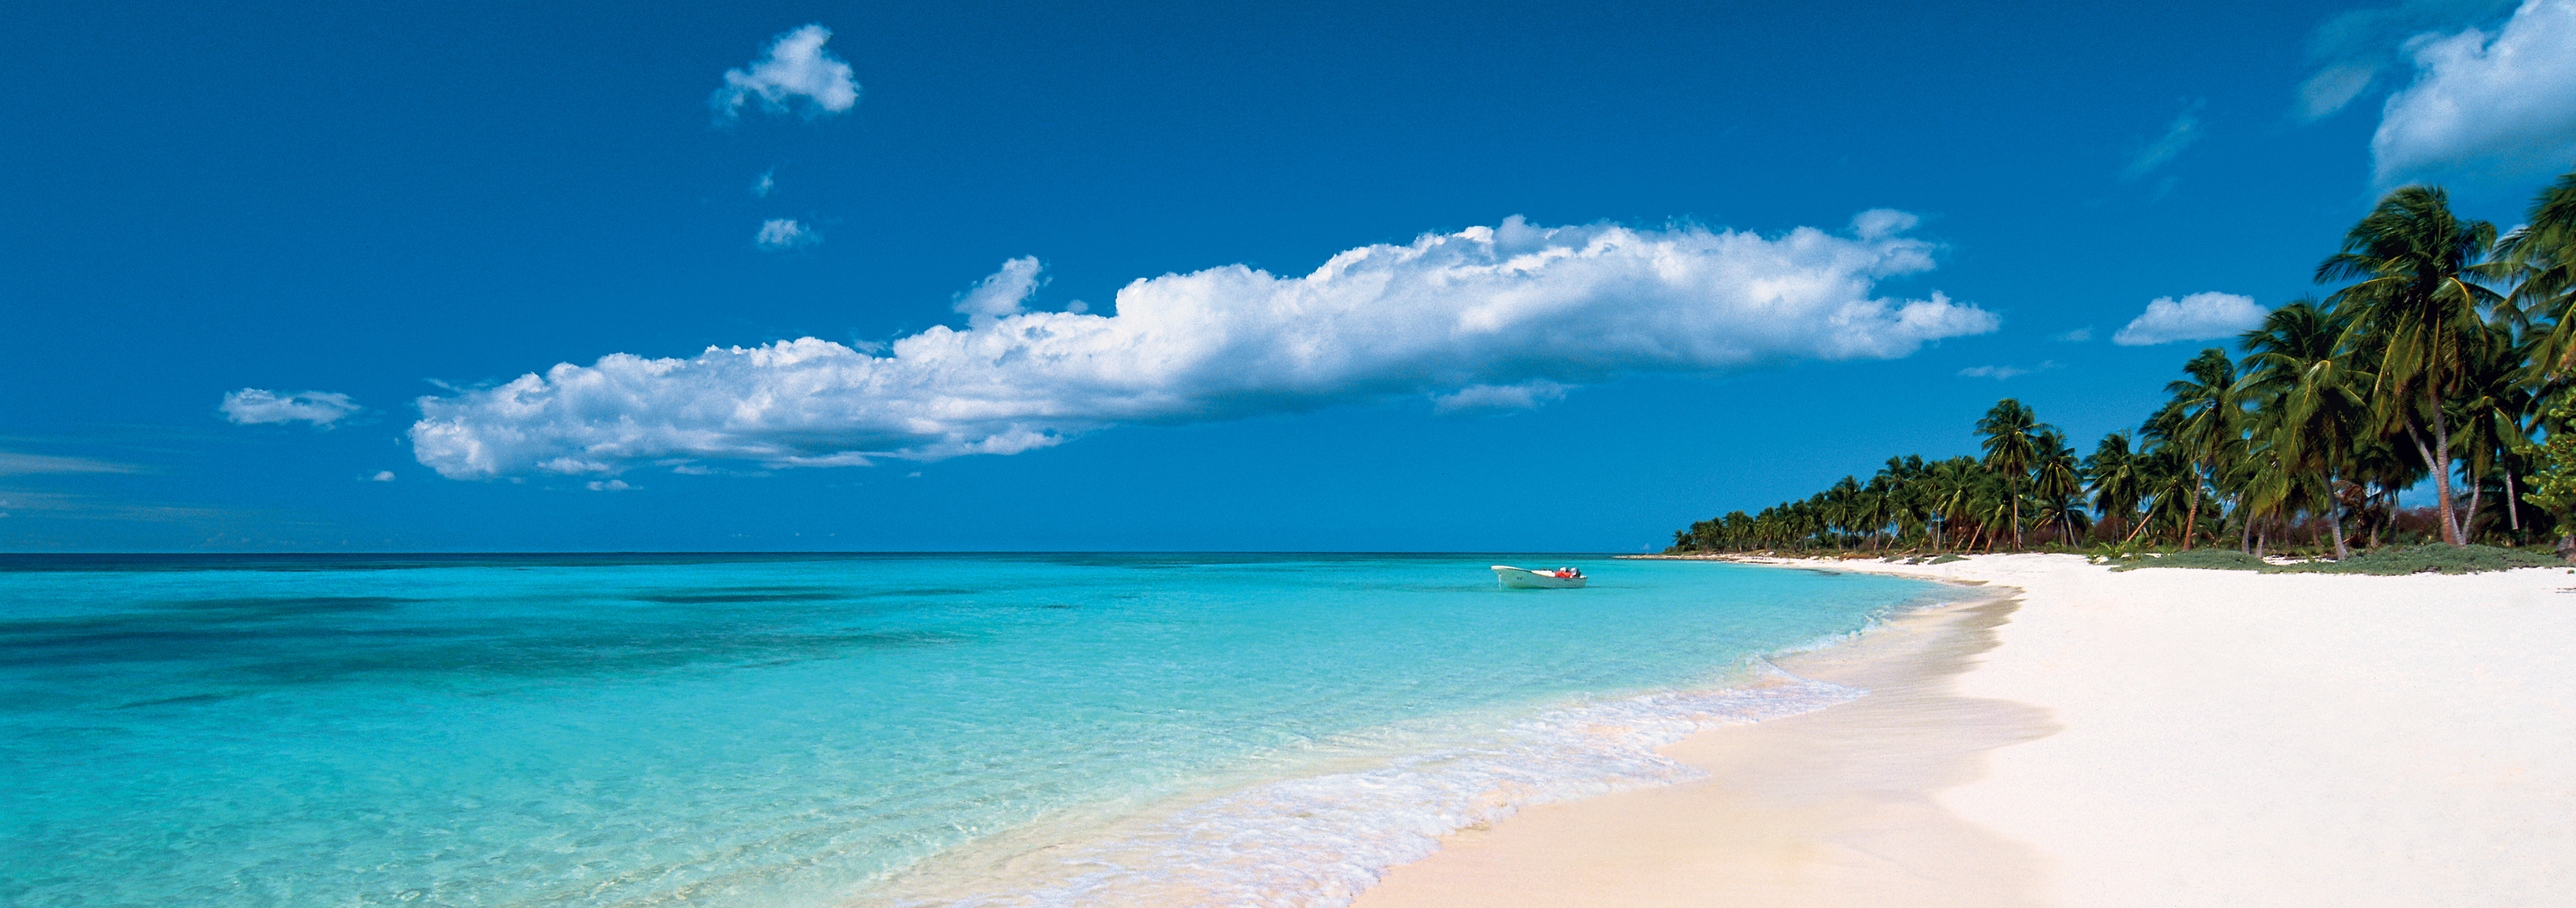 Strand am Cap Cana bei Punta Cana, Dominikanische Republik, Palmenstrand Karibik